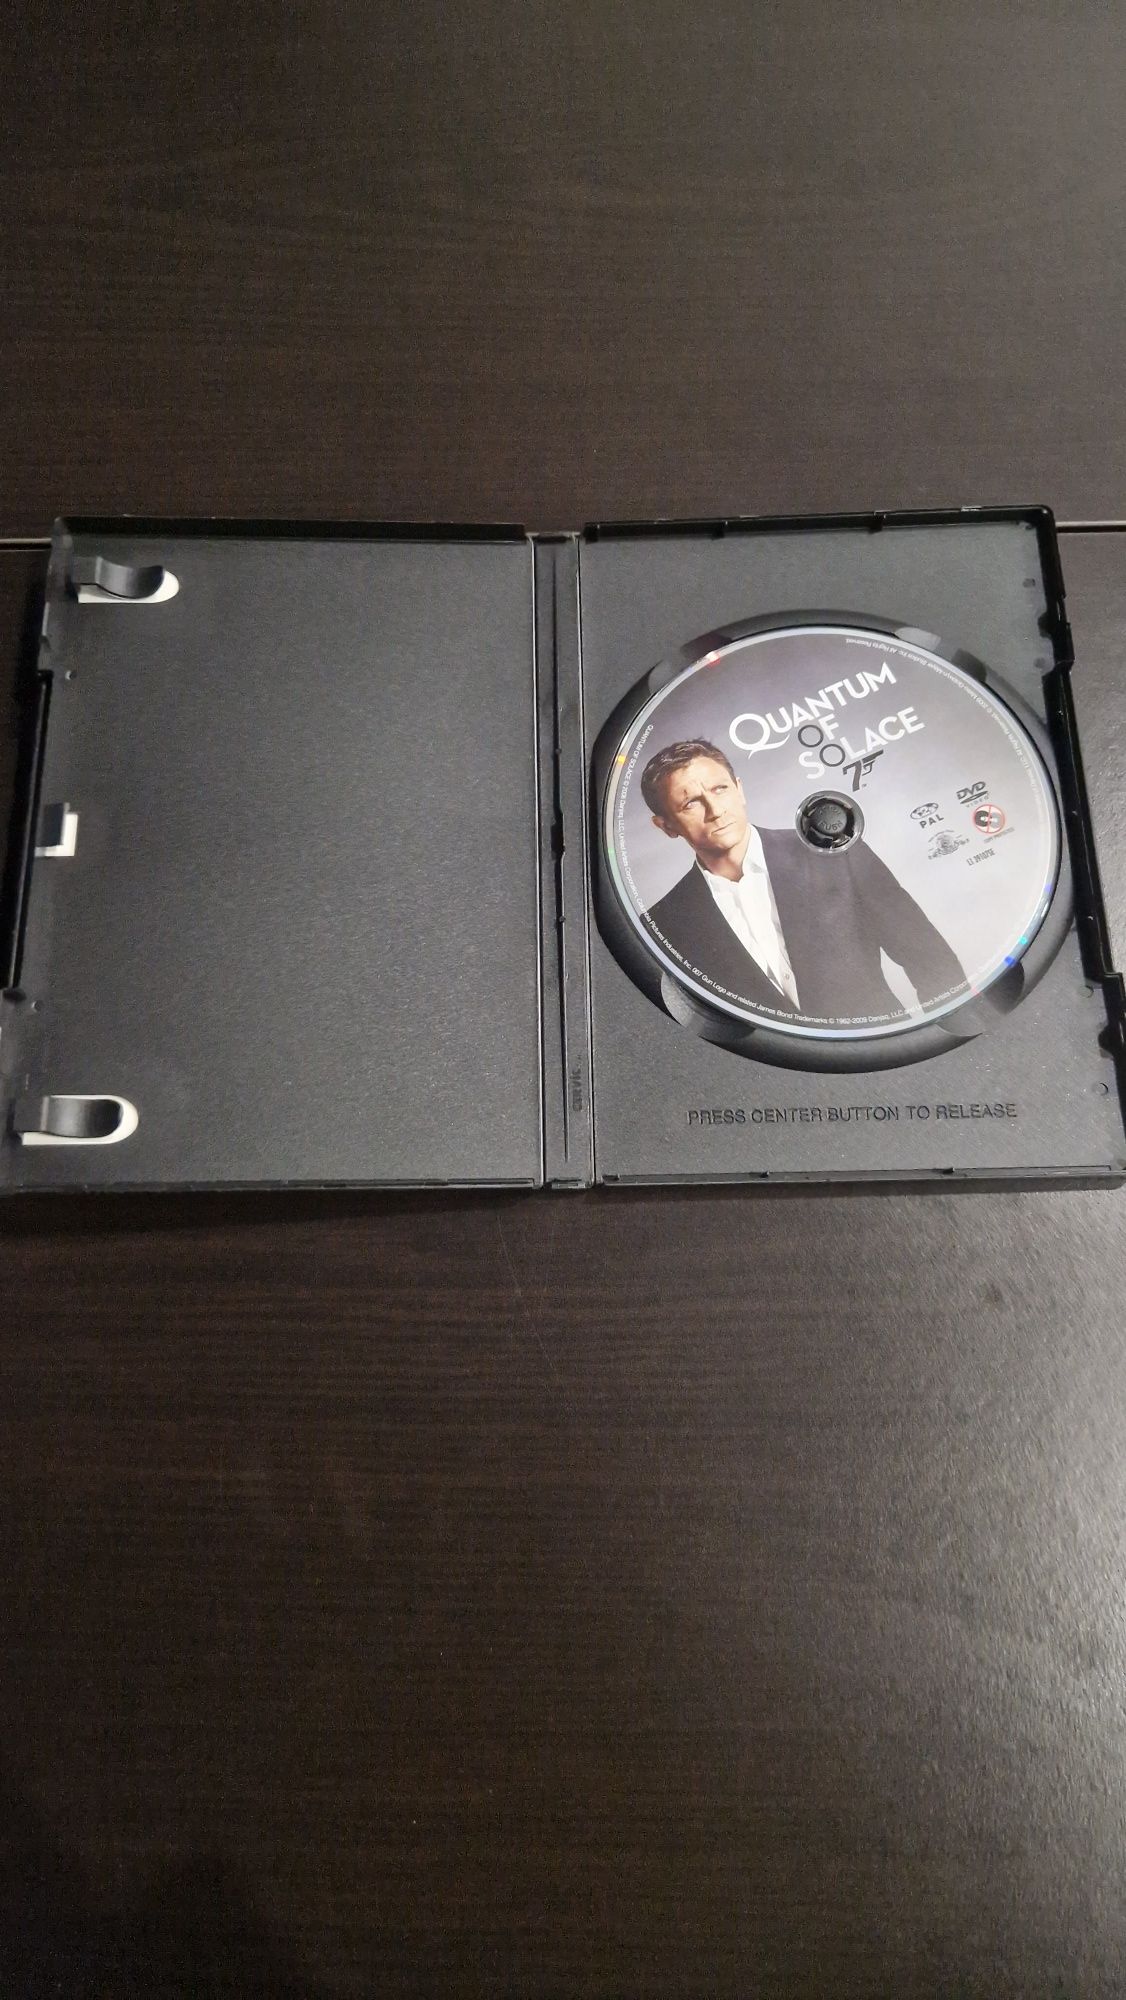 DVD "007 - Quantum of Solace "